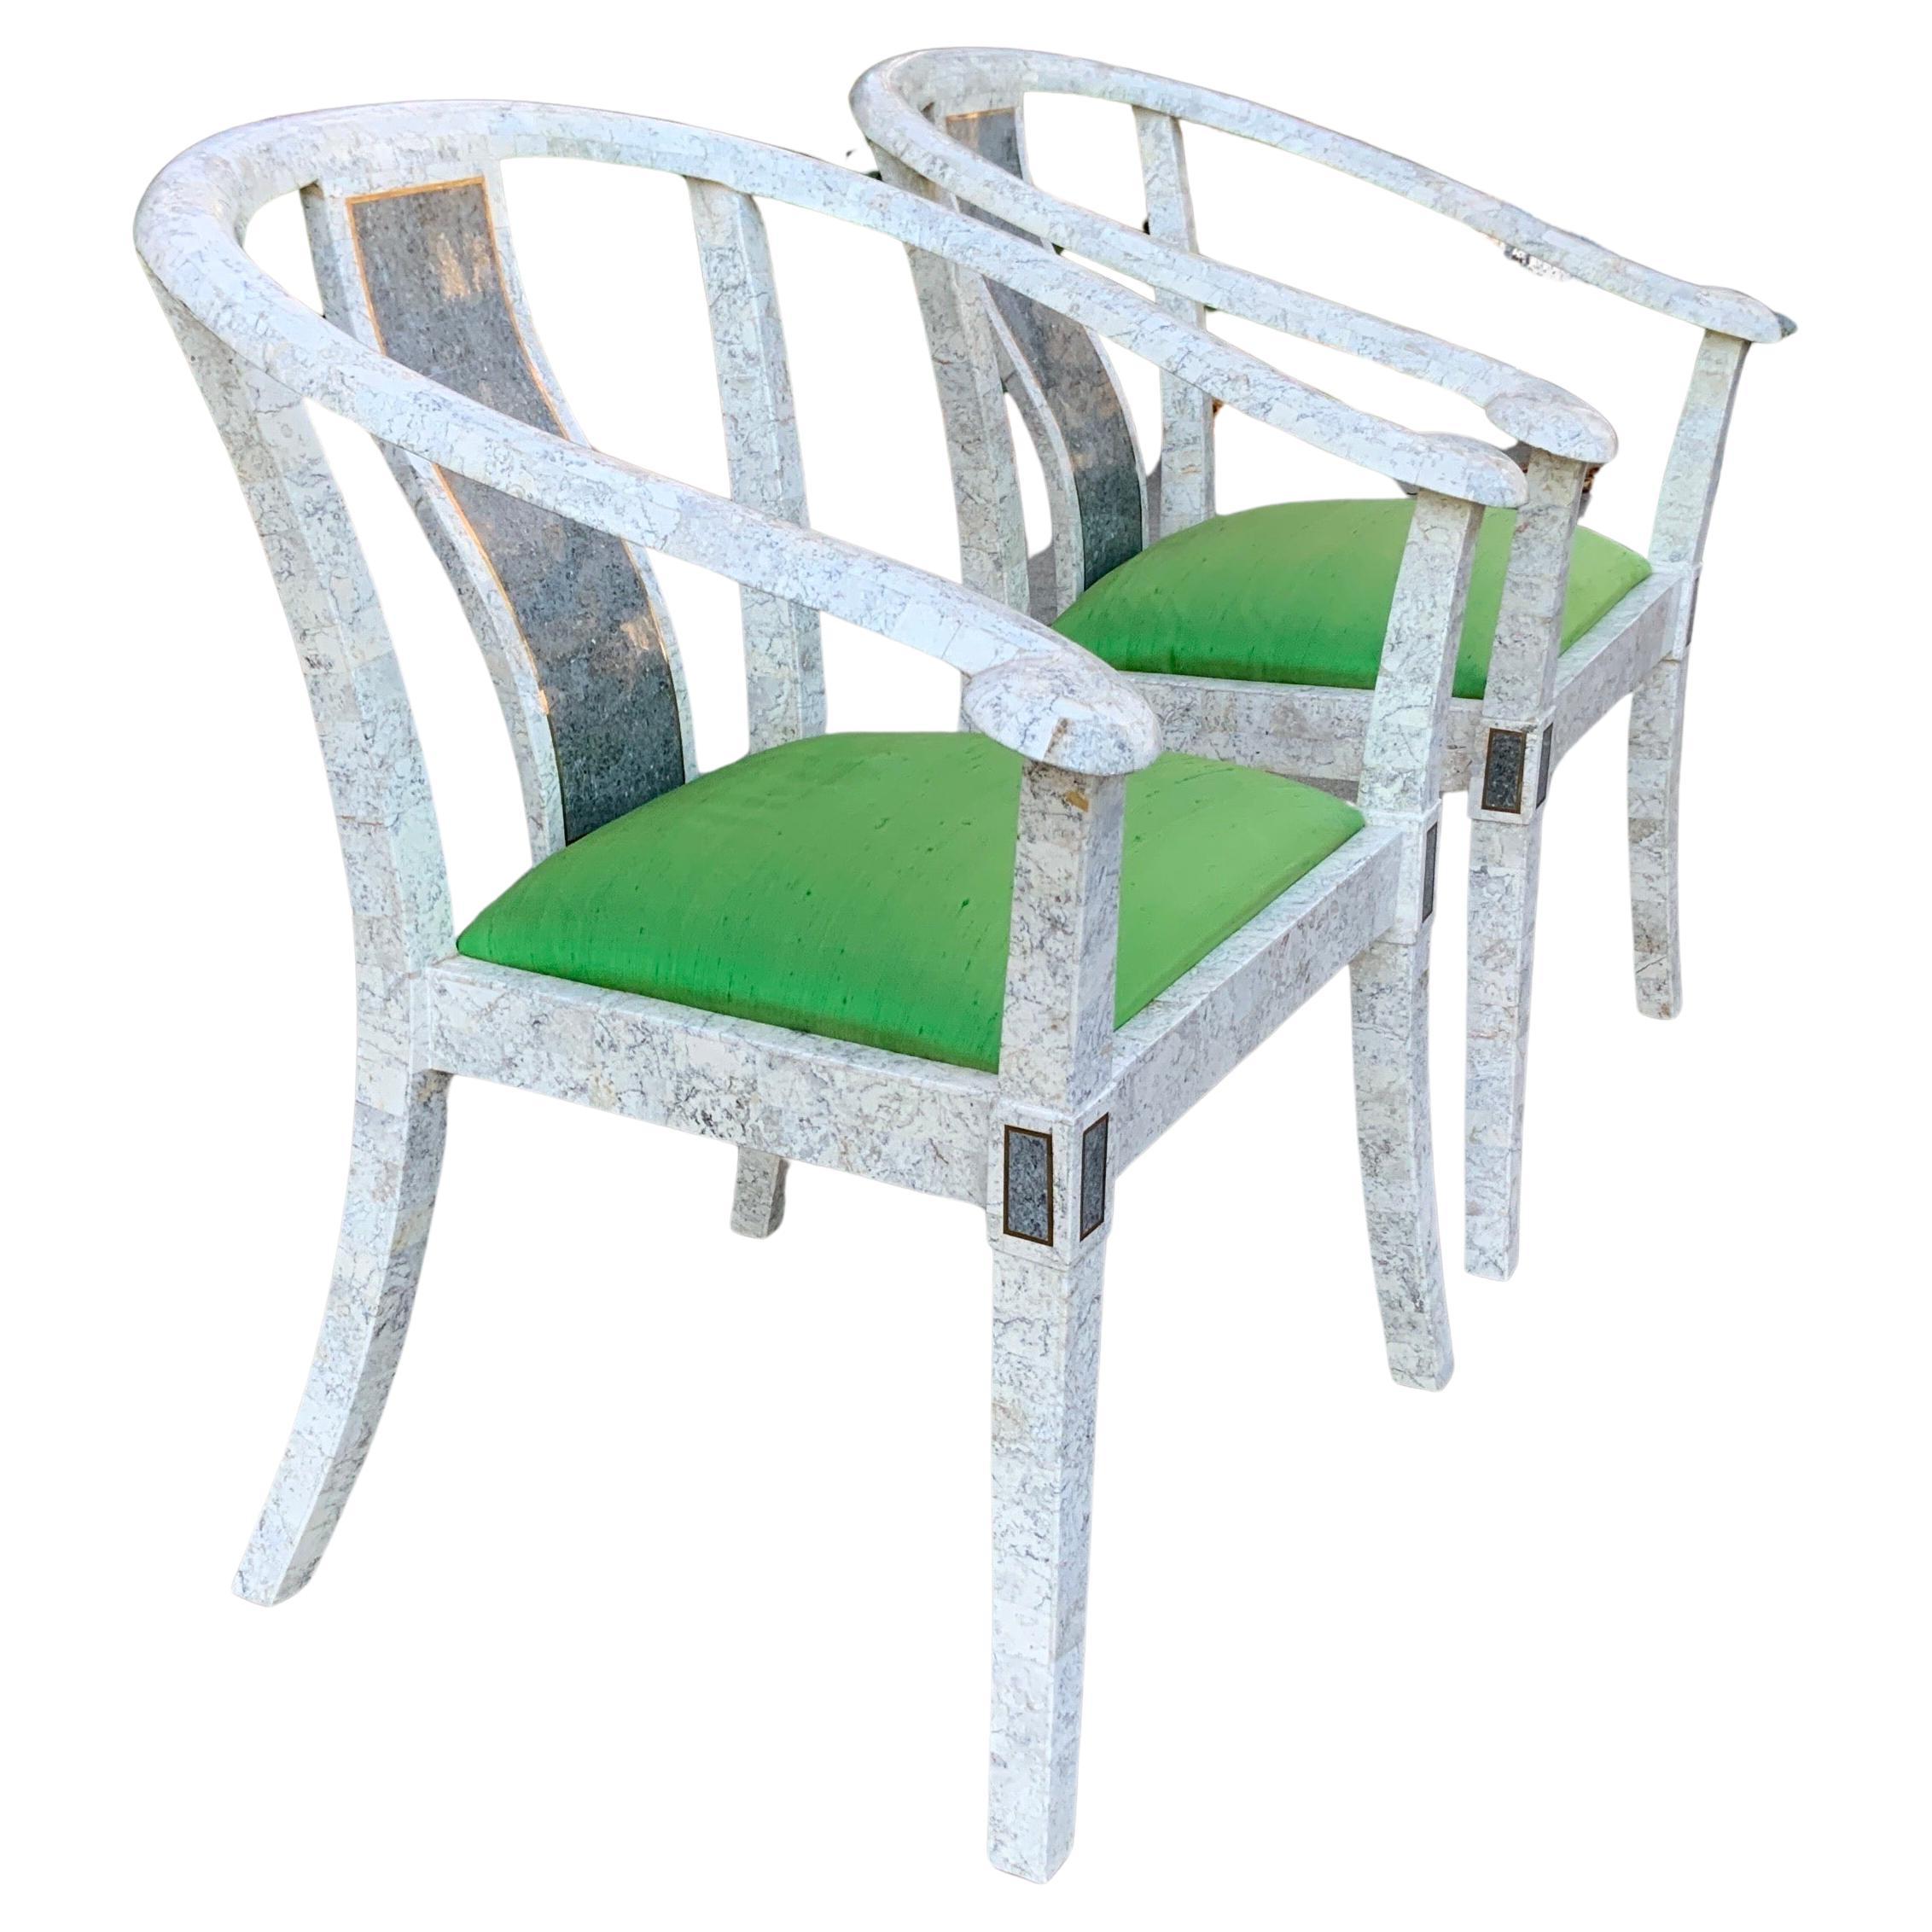 Une paire de chaises tessellées vintage de Maitland Smith. Ces magnifiques pierres blanc cassé avec des sièges rembourrés en vert sont très robustes et présentent des incrustations en laiton et de magnifiques sièges recouverts de soie verte. Ces